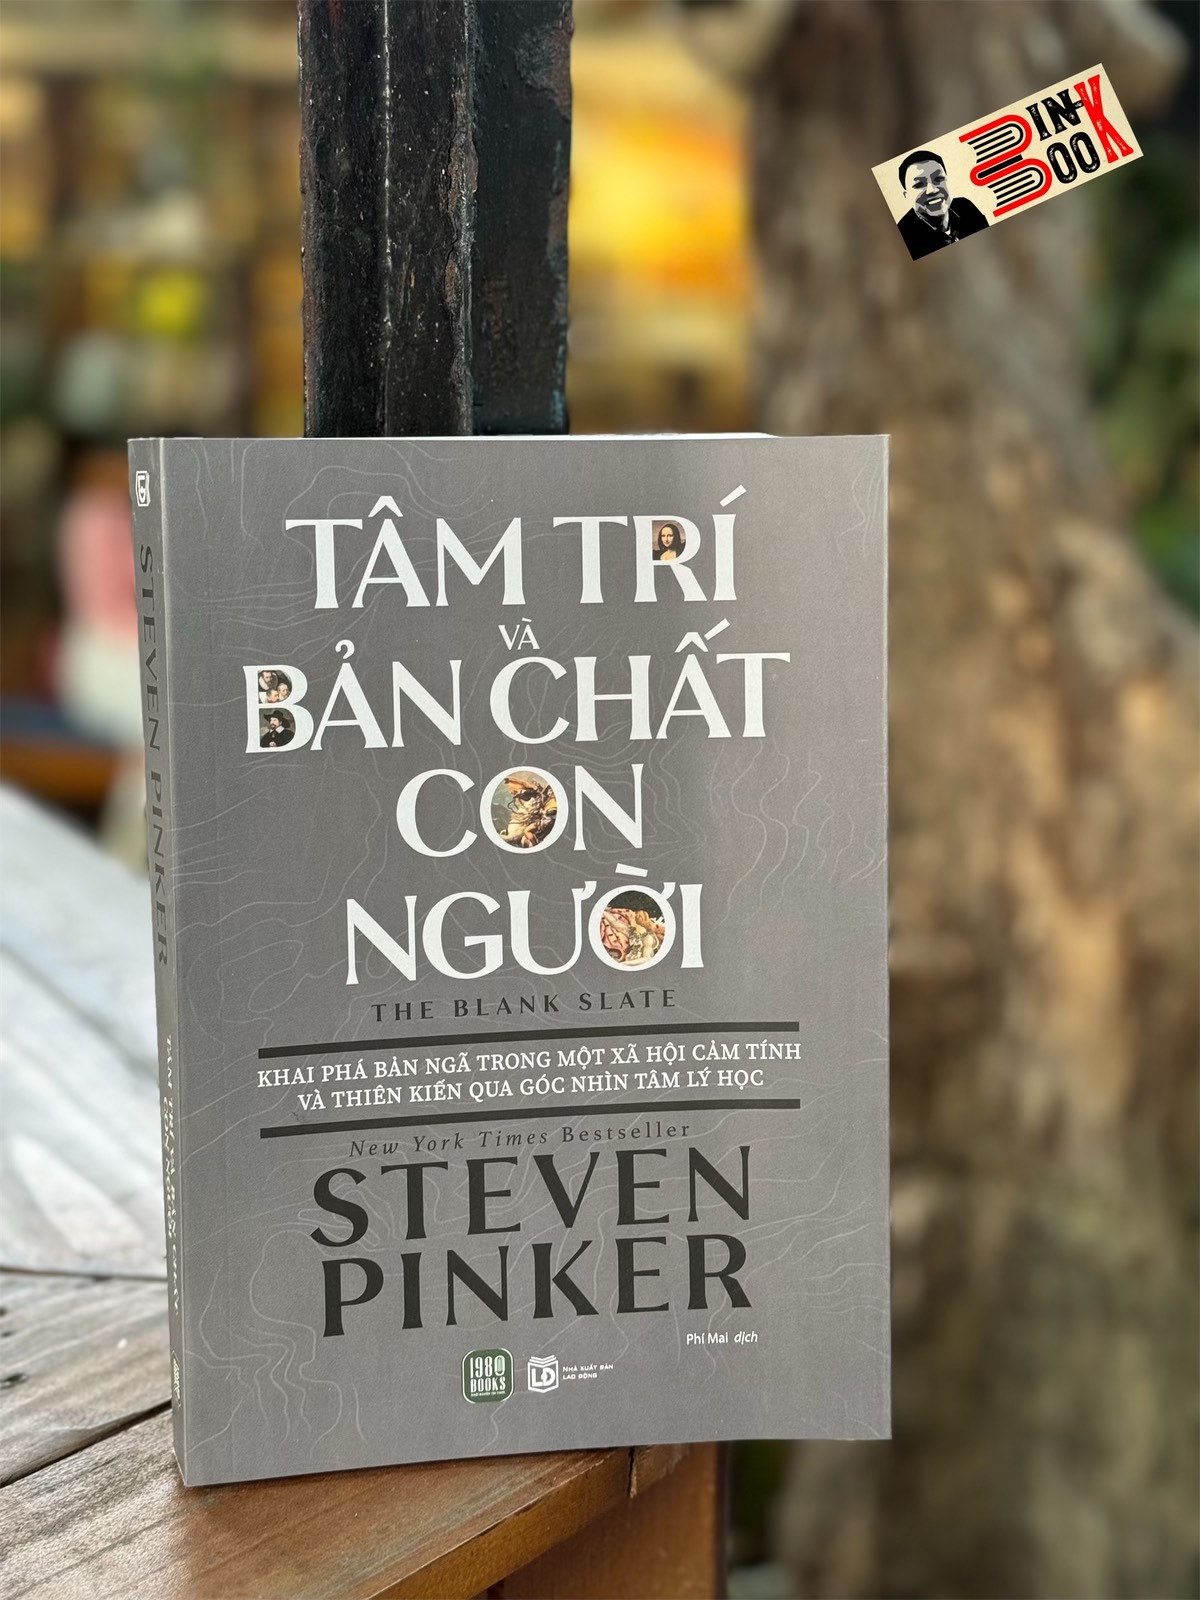 TÂM TRÍ VÀ BẢN CHẤT CON NGƯỜI - Steven Pinker – Phí Mai dịch – NXB Lao động – 1980 Books